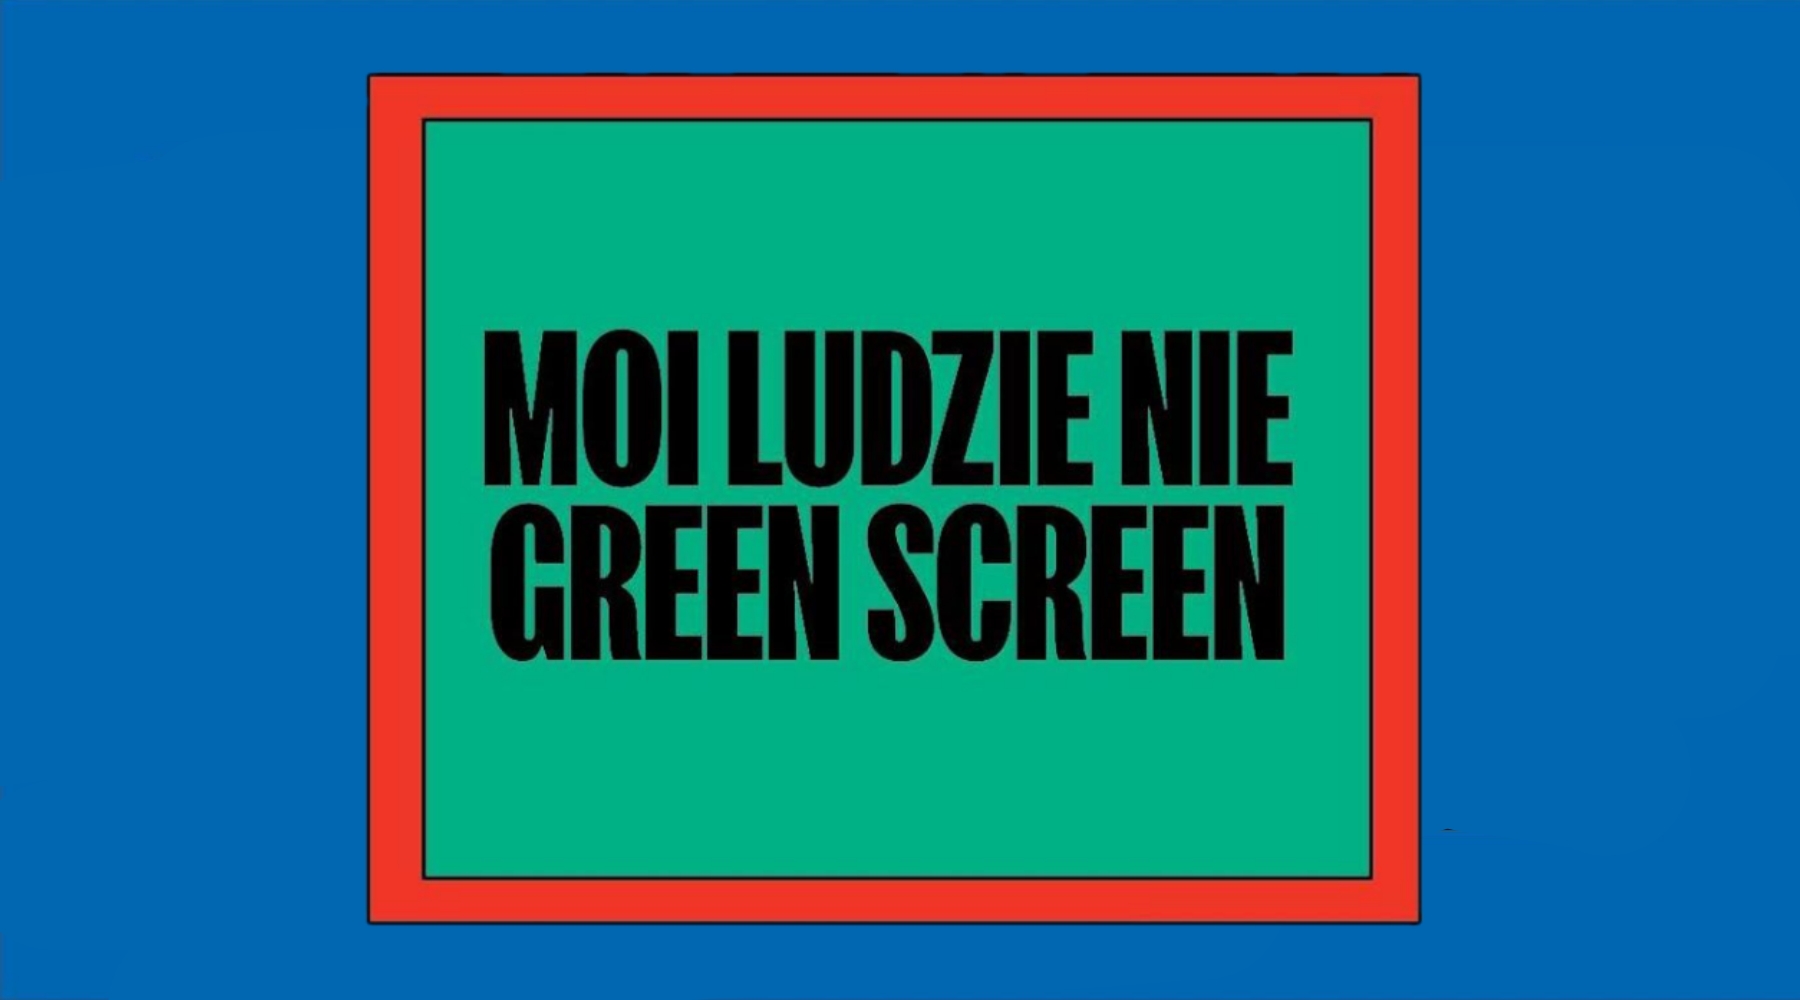 Moi ludzie nie green screen || Nowy singiel od Kosiego || IS.OK